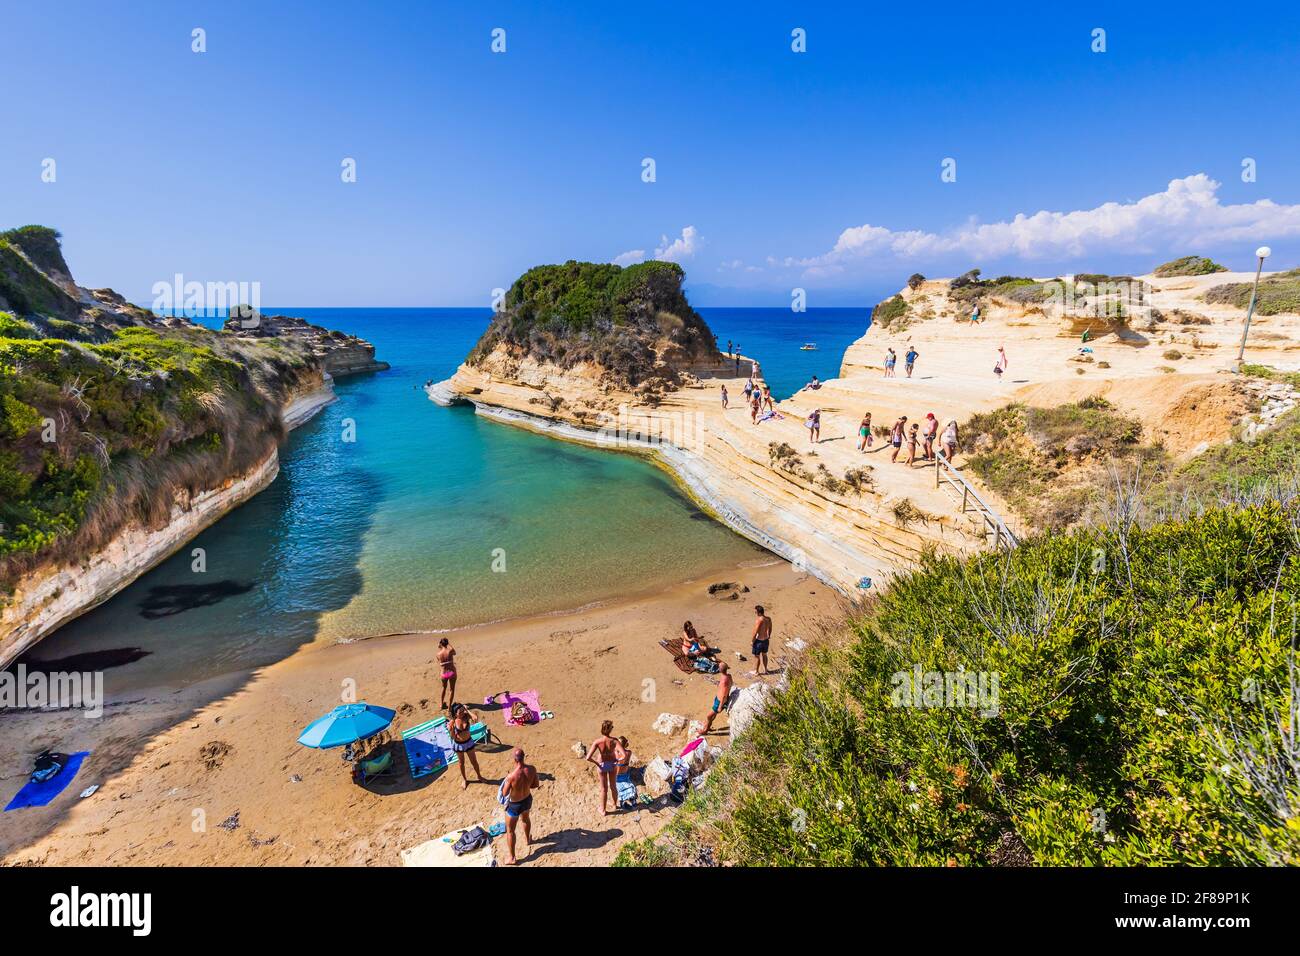 Corfù, Grecia - 24 luglio 2020: Spiaggia Canal d'Amour con splendida costa rocciosa. Foto Stock